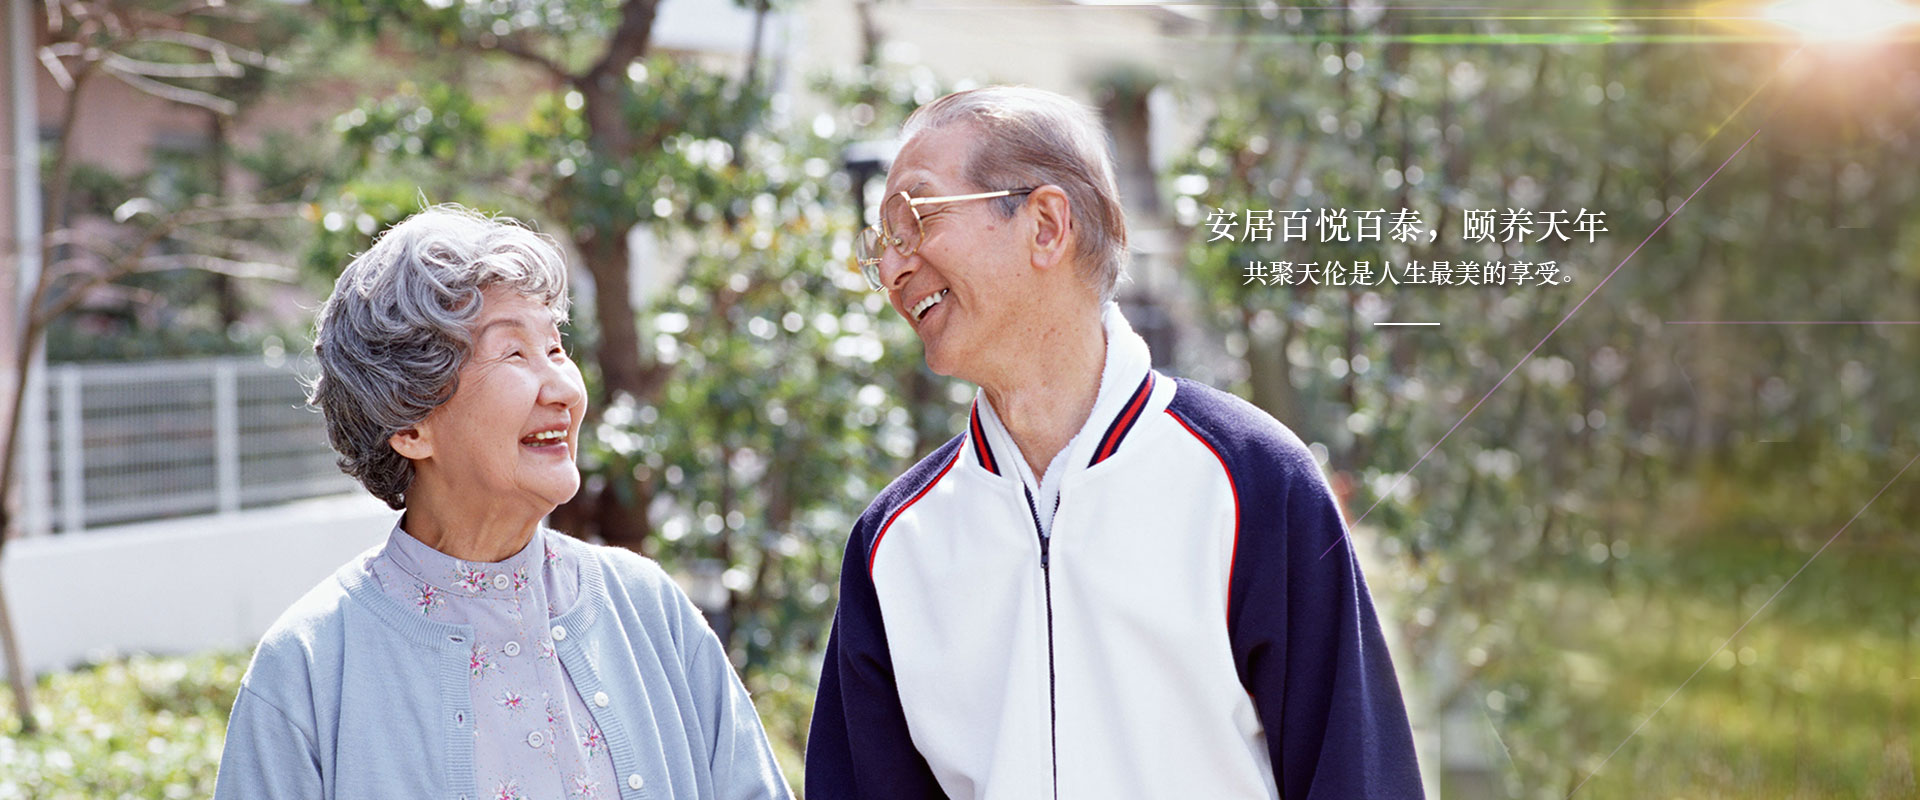 广州好的养老院一览表百悦百泰老人院养生养老之家